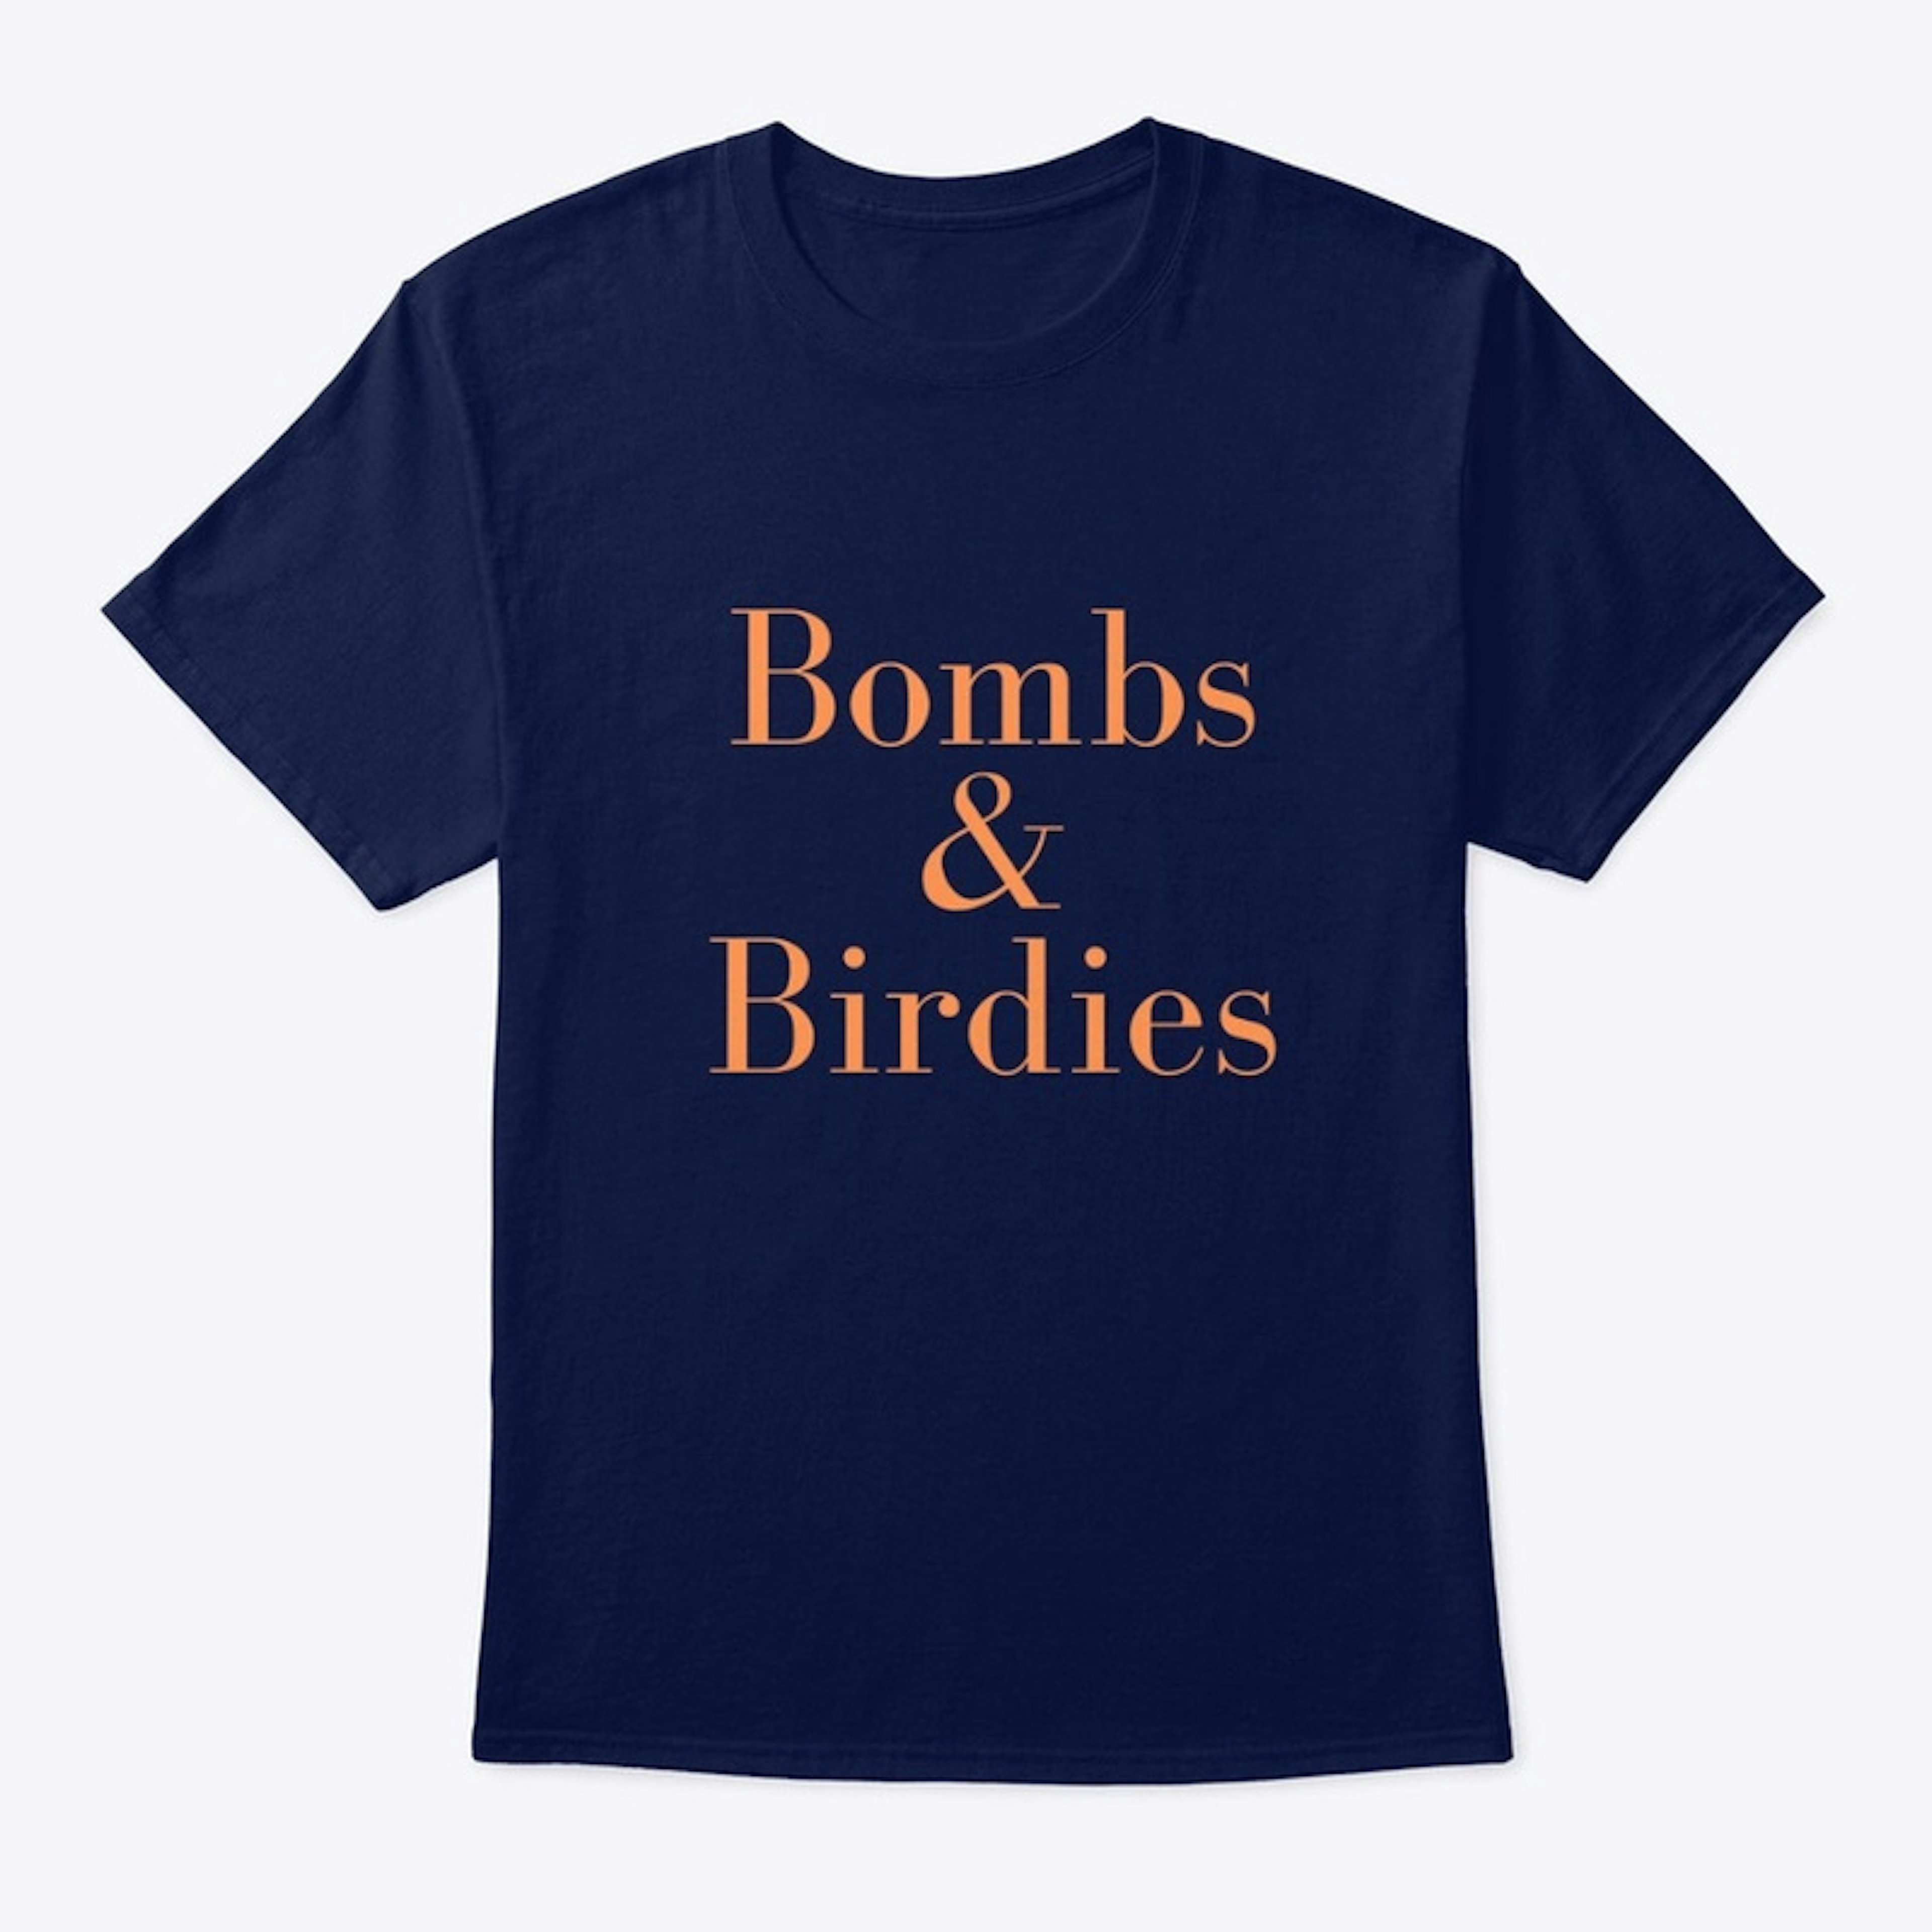 Bombs & Birdies Orange